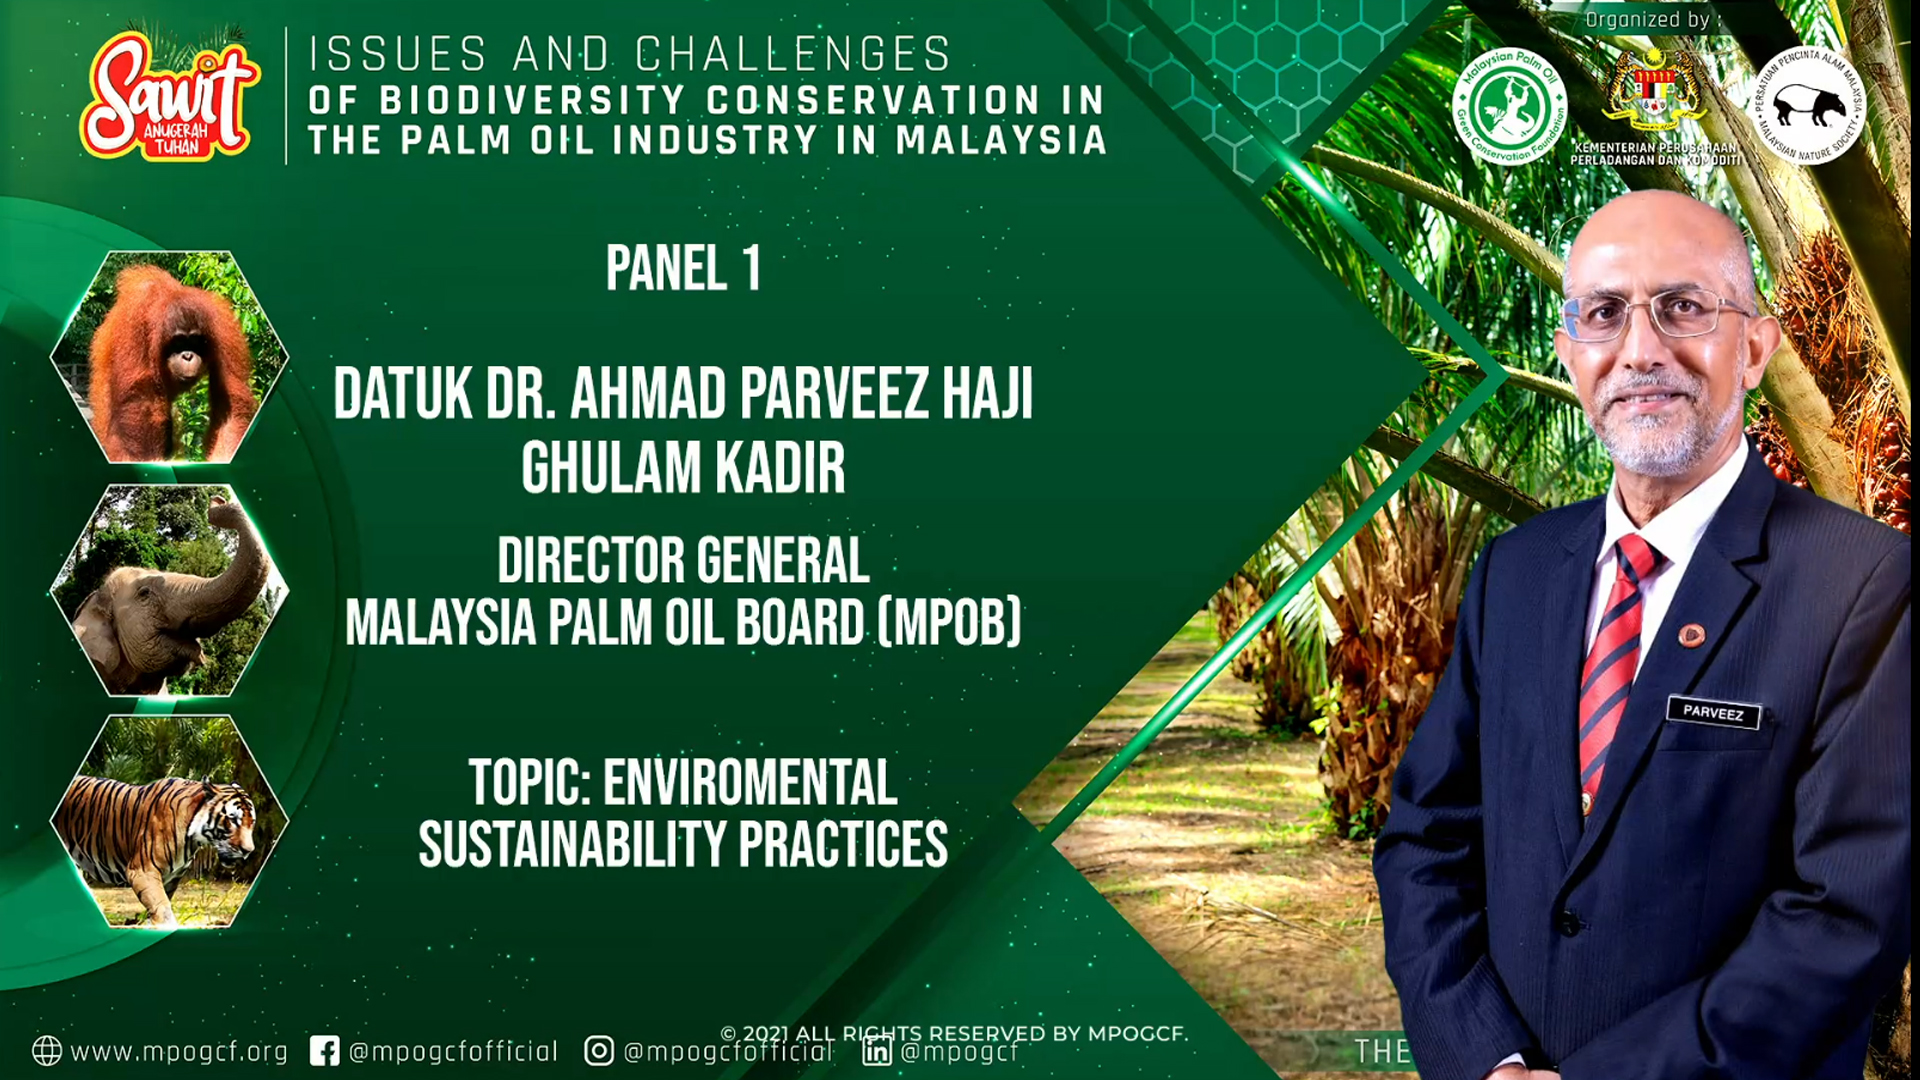 Environmental and Sustainability Practices by Dr Ahmad Parveez Hj Ghulam Kadir